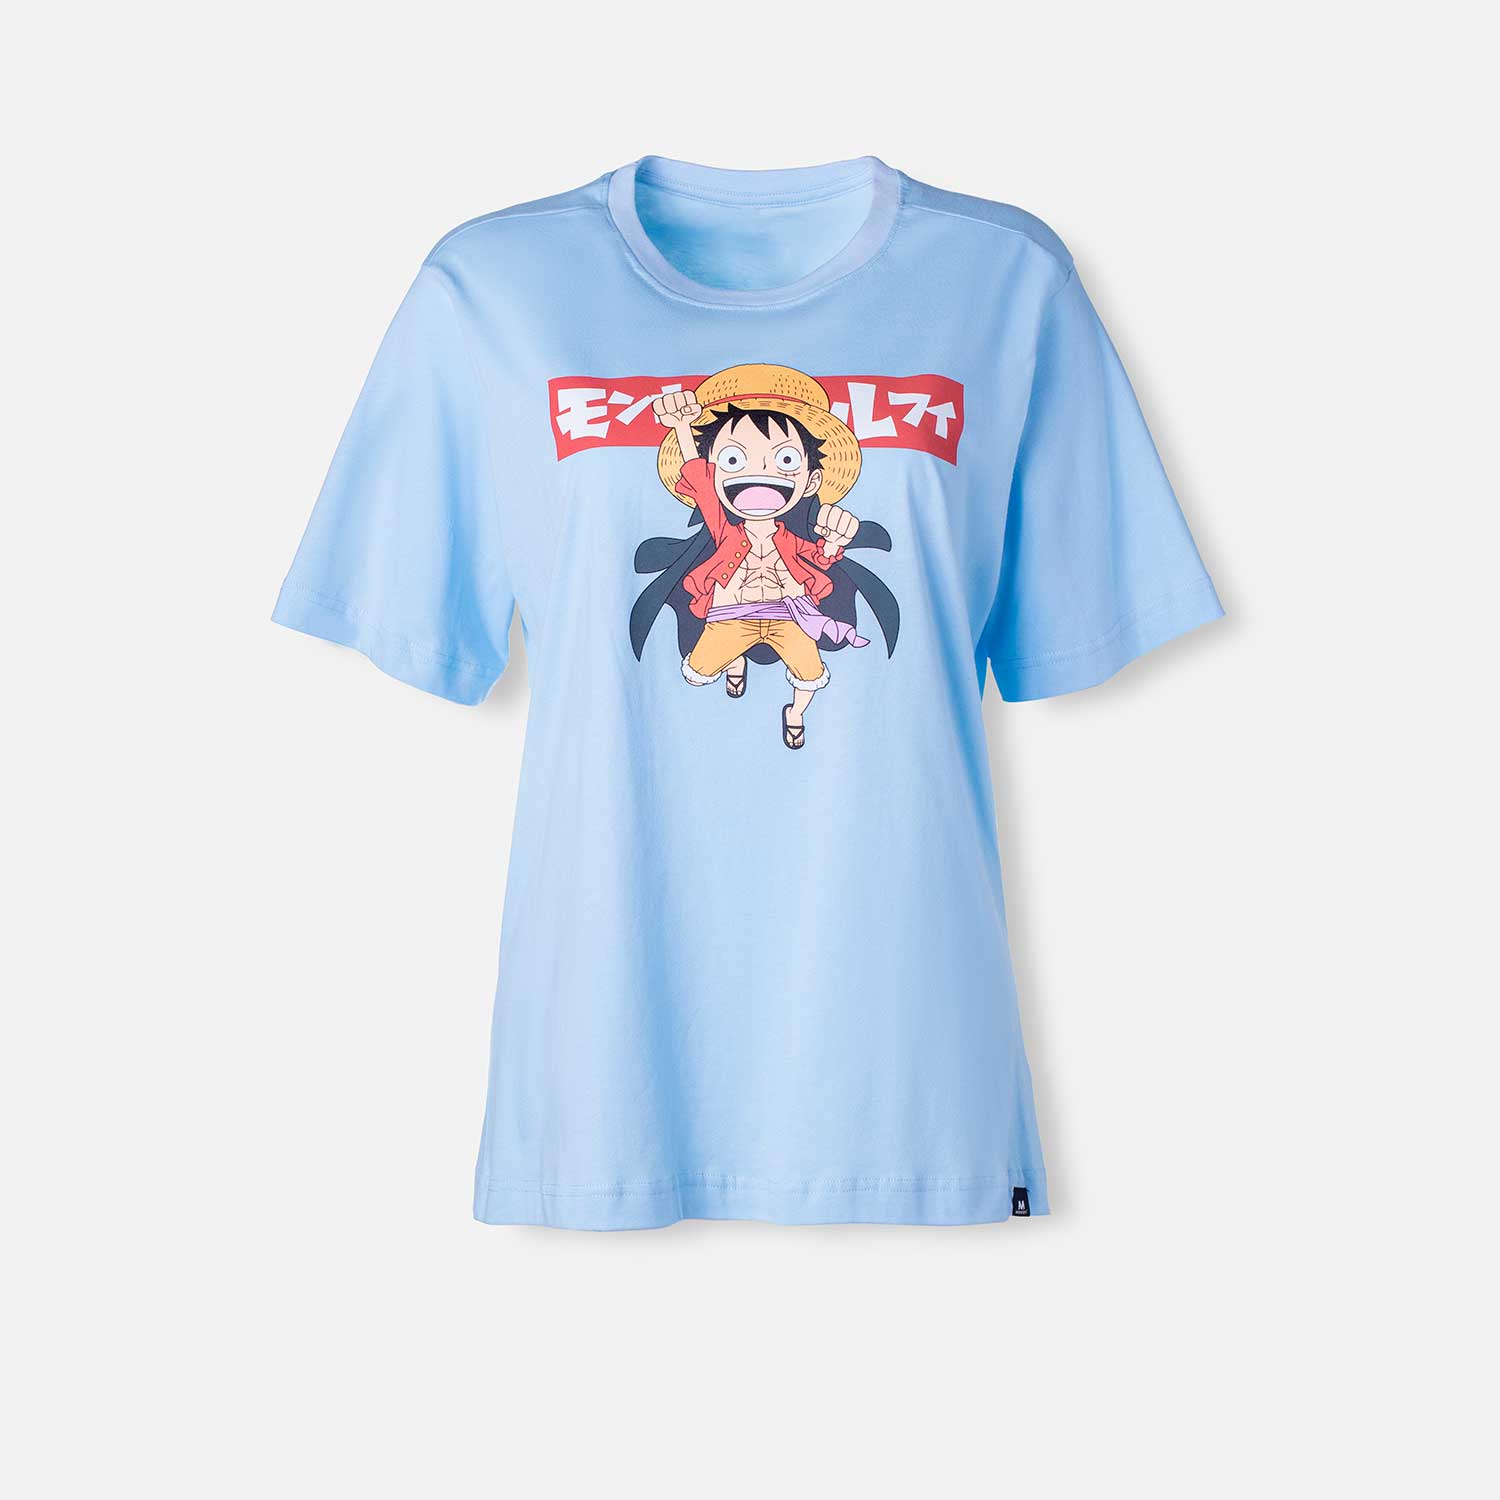 Camiseta de One Piece azul cuello redondo para mujer S-0